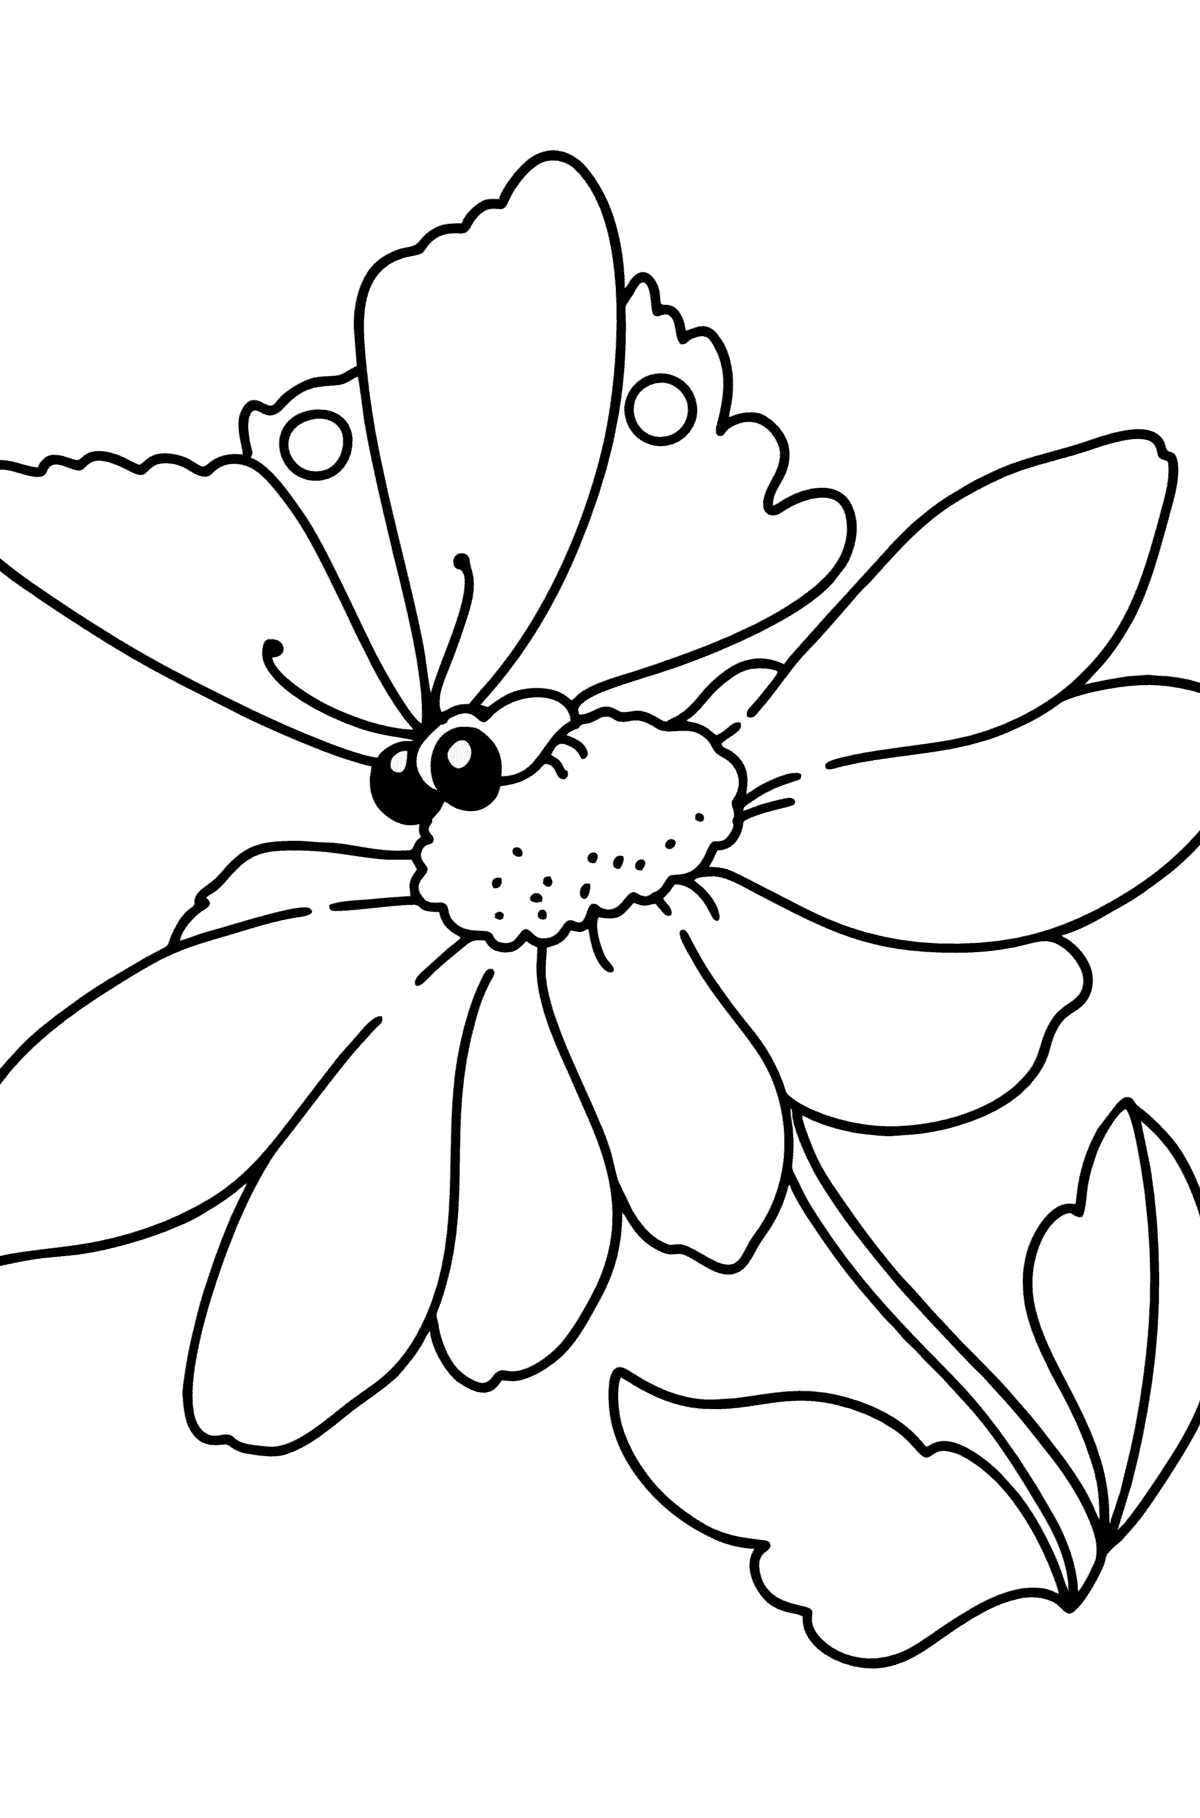 Tegning til farvning sommer - blomster og sommerfugl - Tegninger til farvelægning for børn